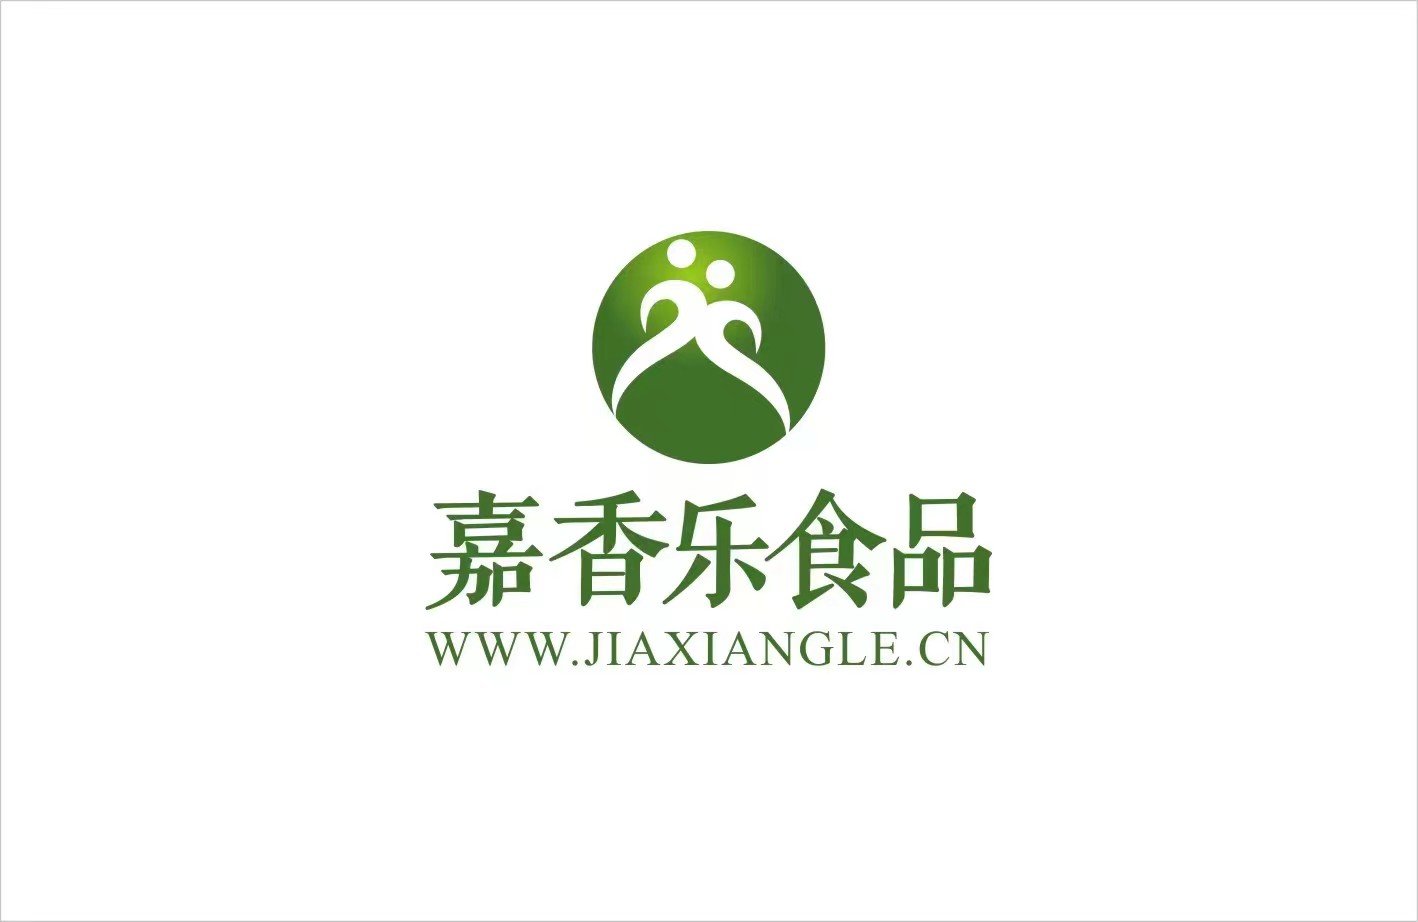 Jiangxi Xingguo jiaxiangle Food Co., Ltd